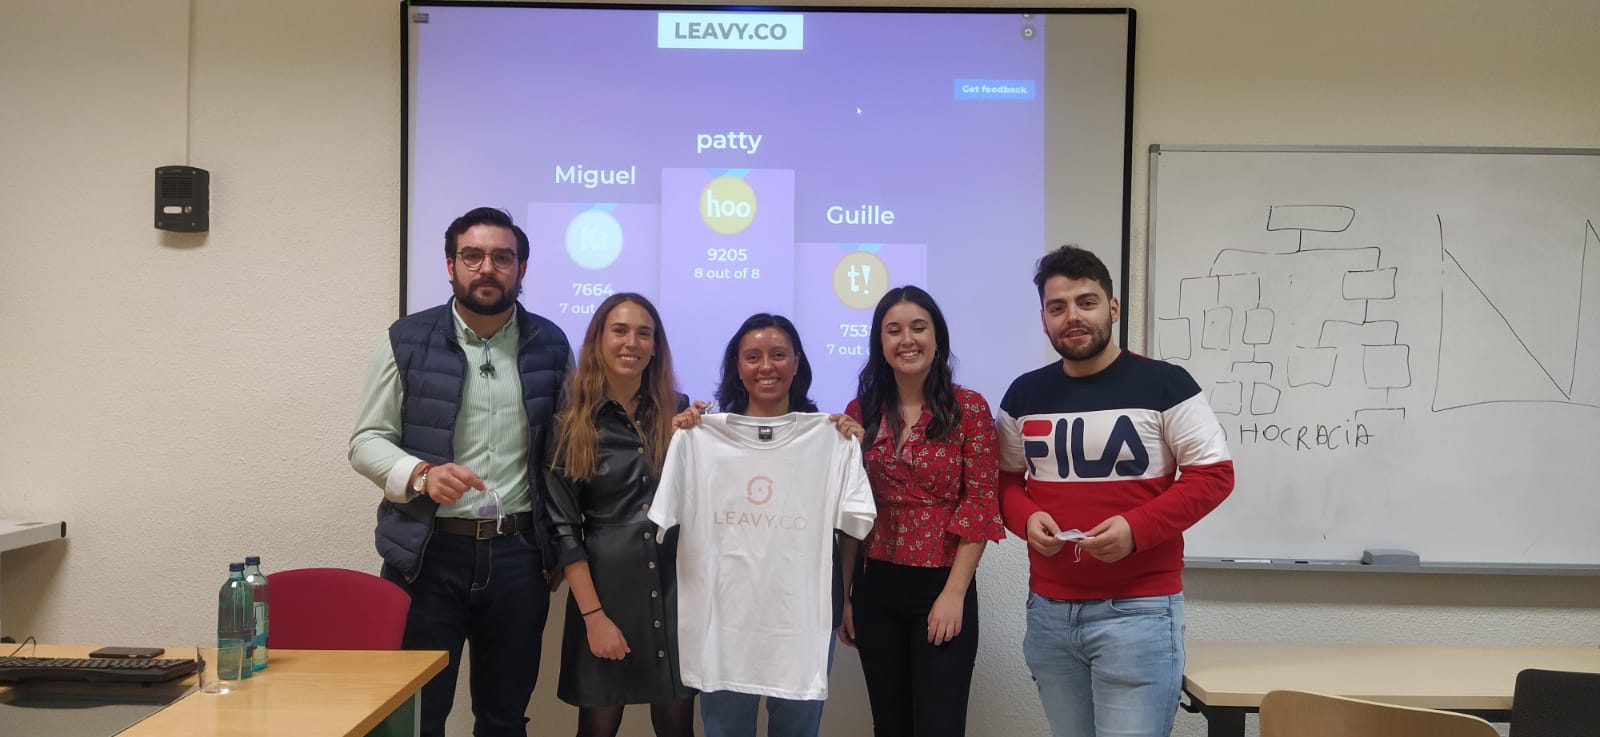 Leavy.co: una startup turística en Madrid - 1